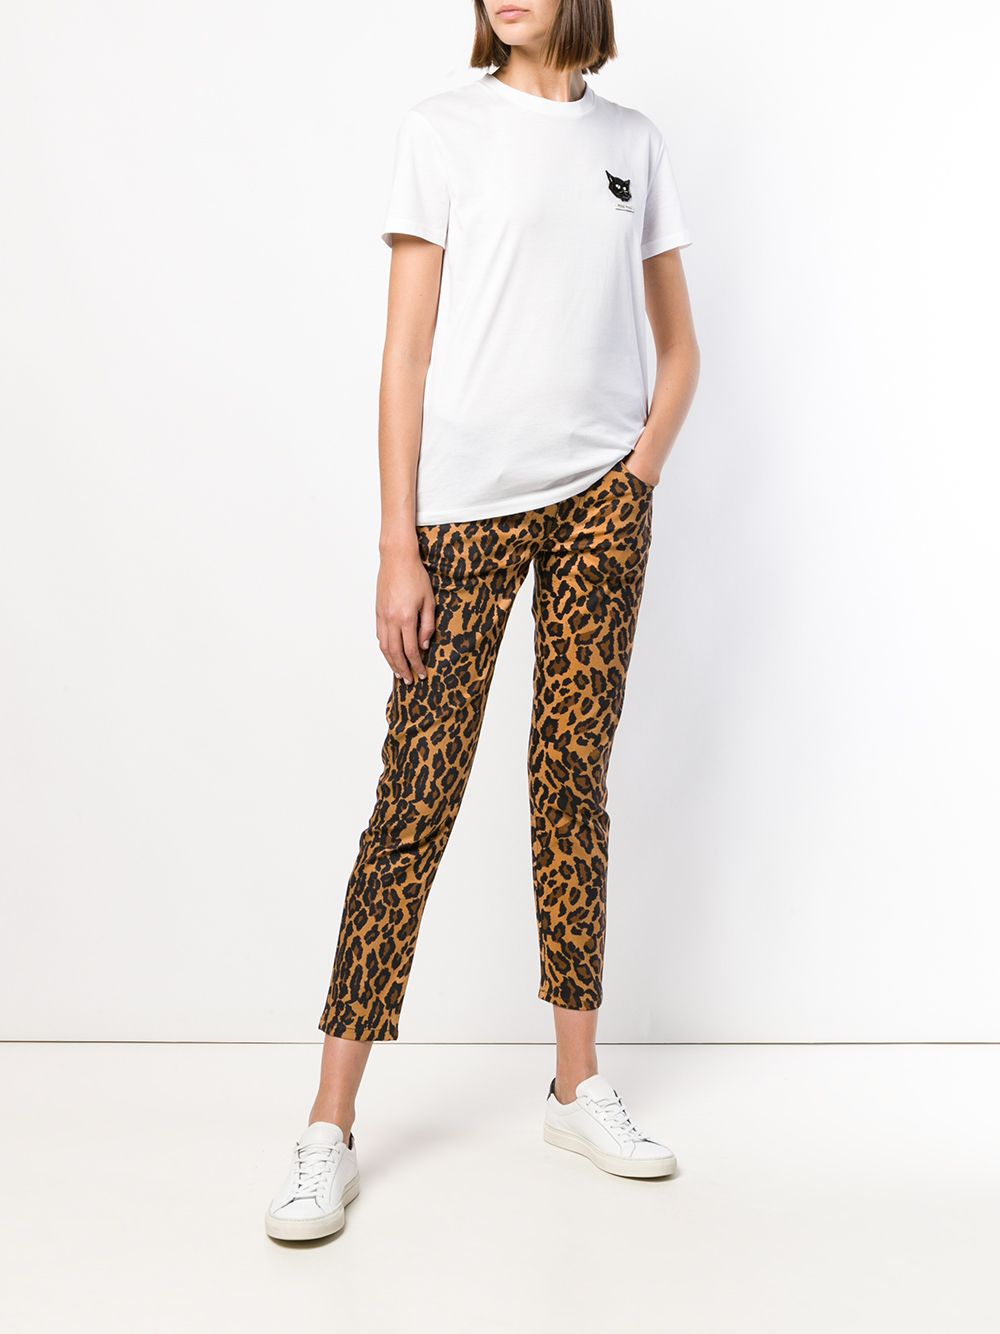 фото Miu Miu джинсы скинни с леопардовым принтом